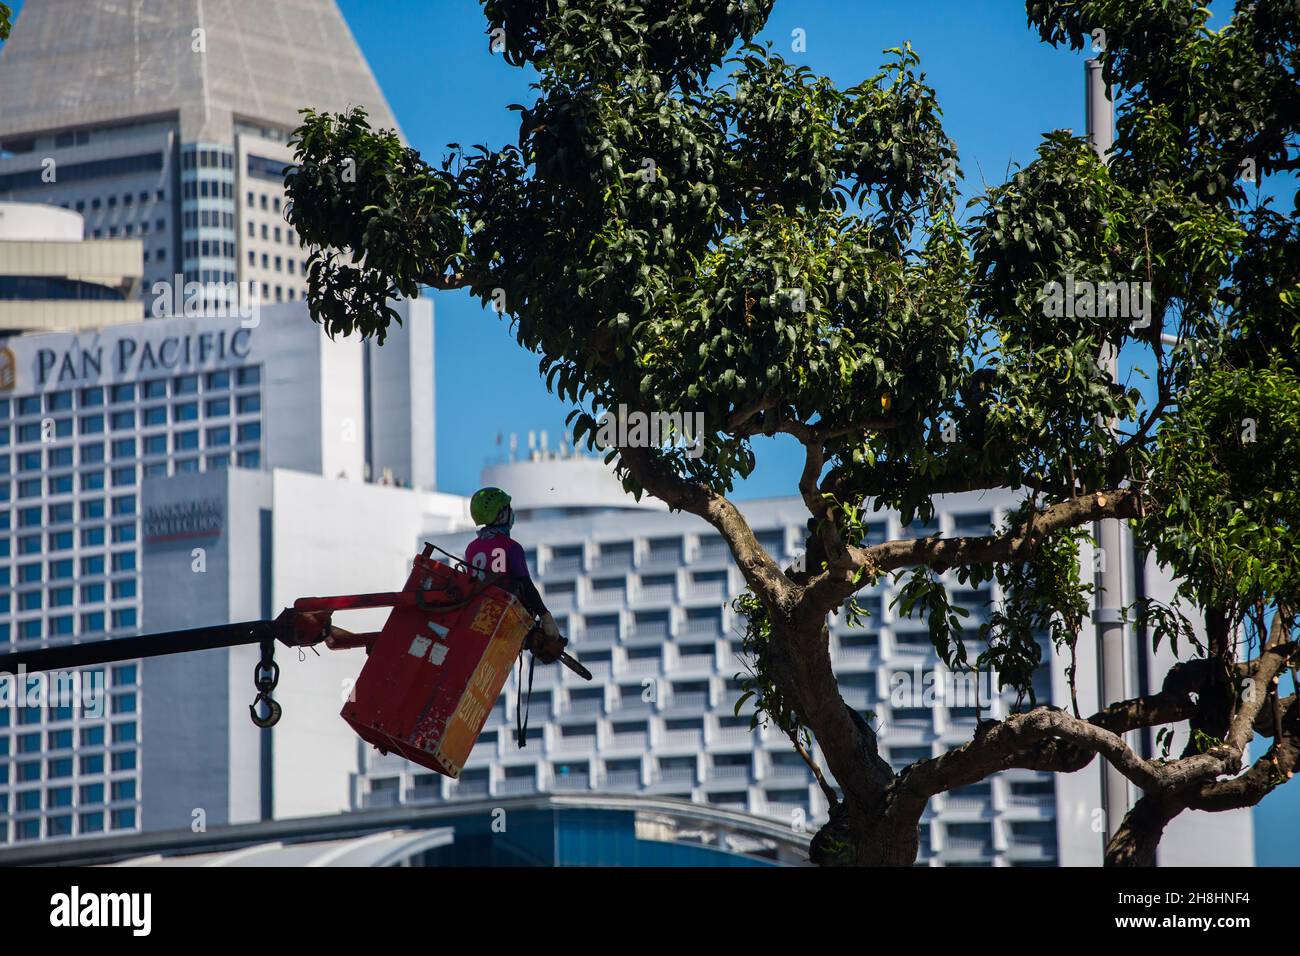 Un travailleur professionnel soulevé par la grue, avec une scie électrique sur sa main, prêt à couper les branches de l'arbre. Singapour. Banque D'Images